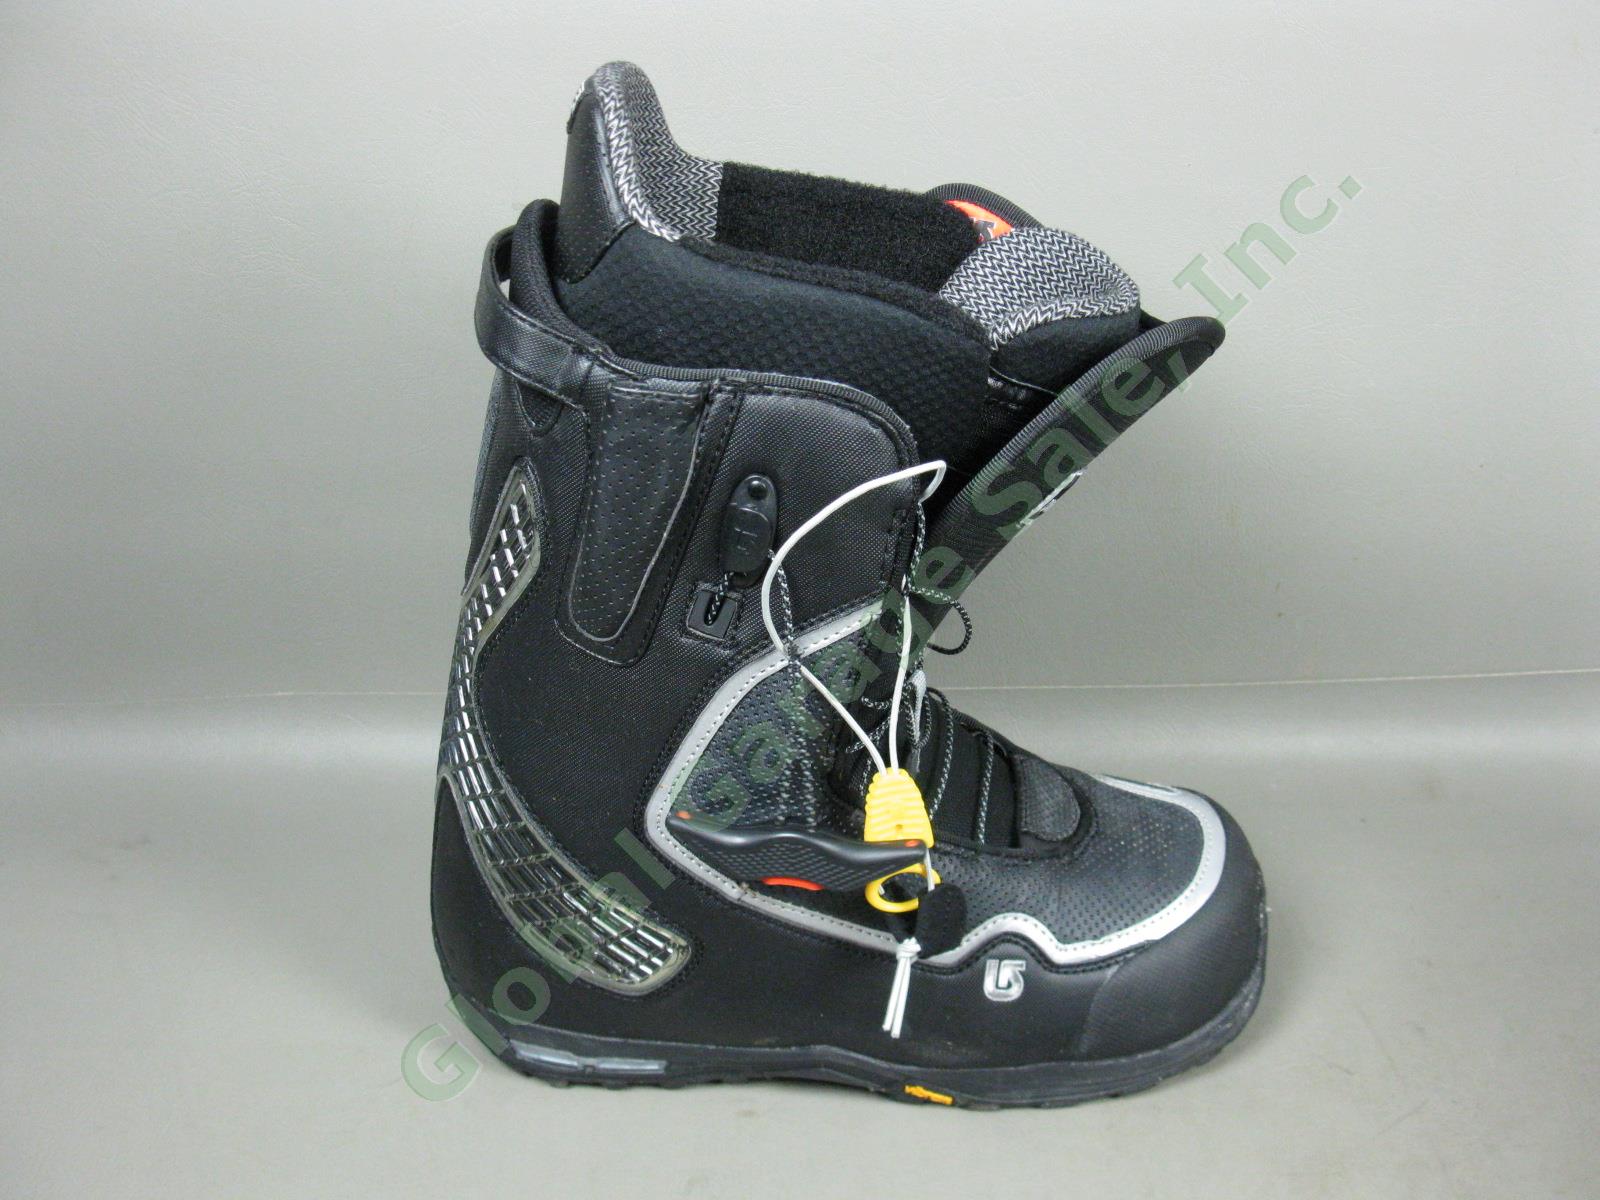 Mens Black/Silver Burton Driver X Snowboard Boots 10.5 W/ Box +$60 Aline Insoles 1